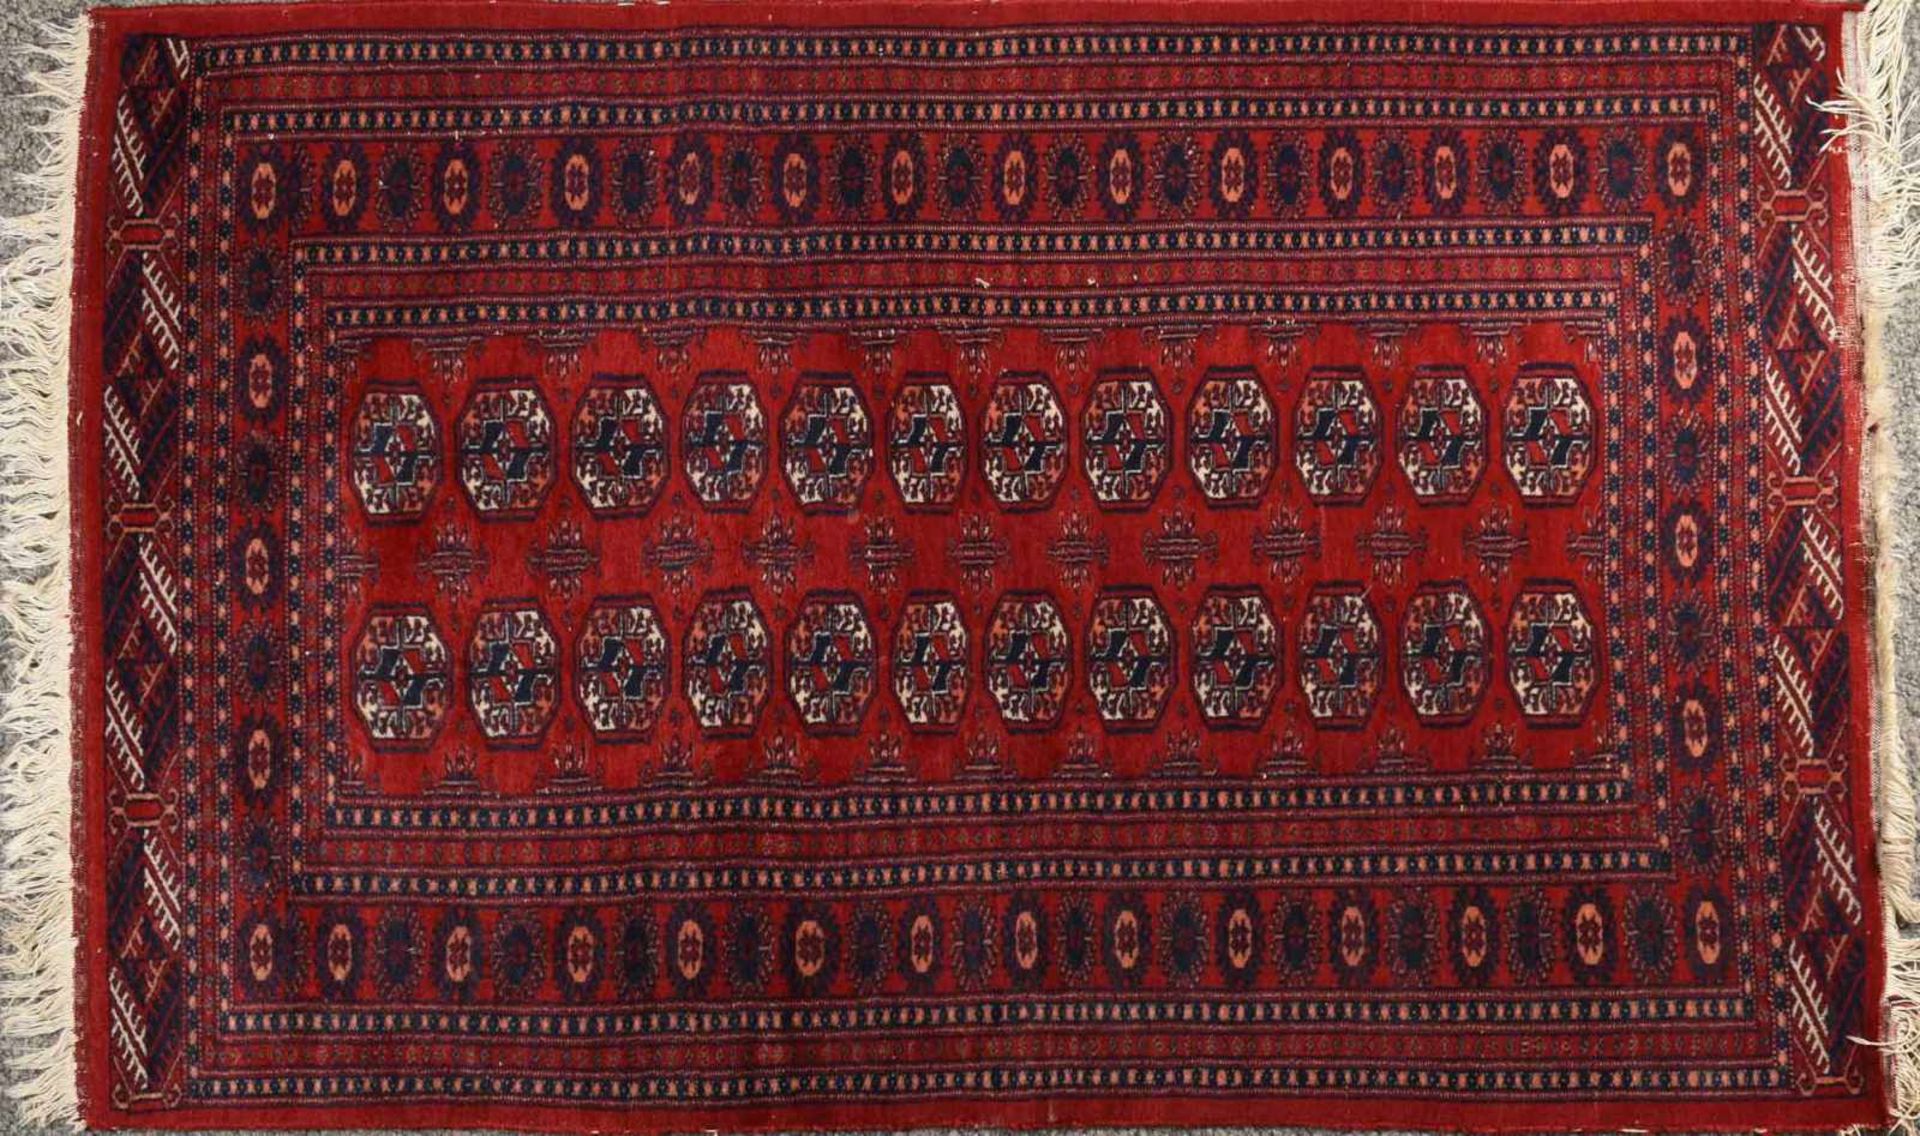 Brücke Wolle, handgeknüpft, Buchara-Muster, im rotgrundigen Zentralfeld zwei Medaillonreihen, - Bild 2 aus 2